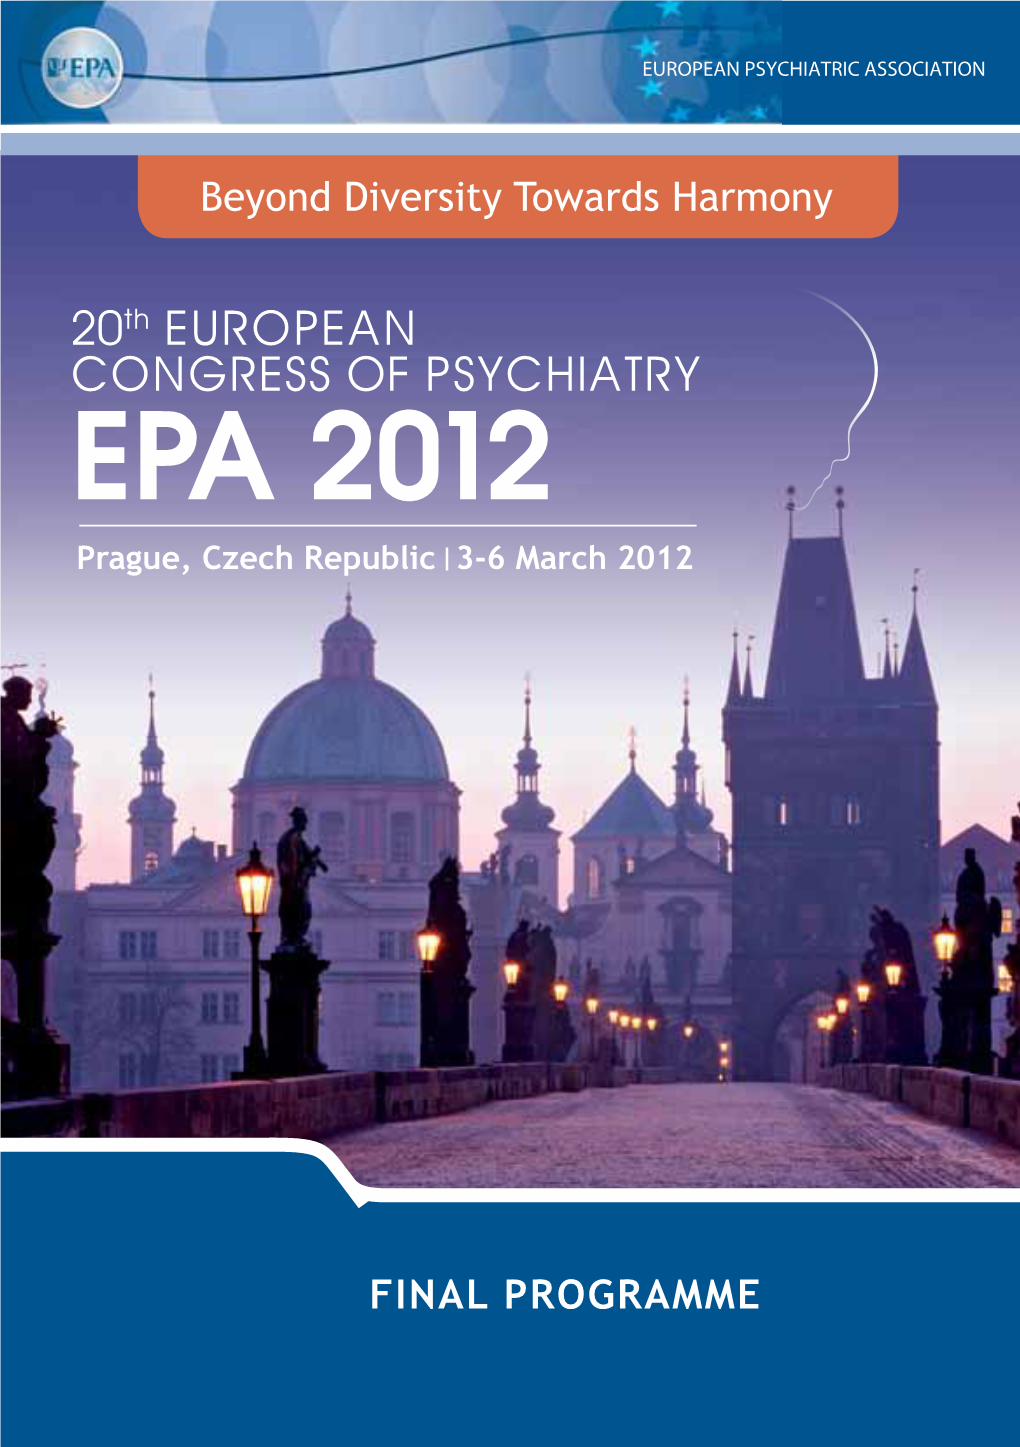 EPA 2012 Prague, Czech Republic 3-6 March 2012